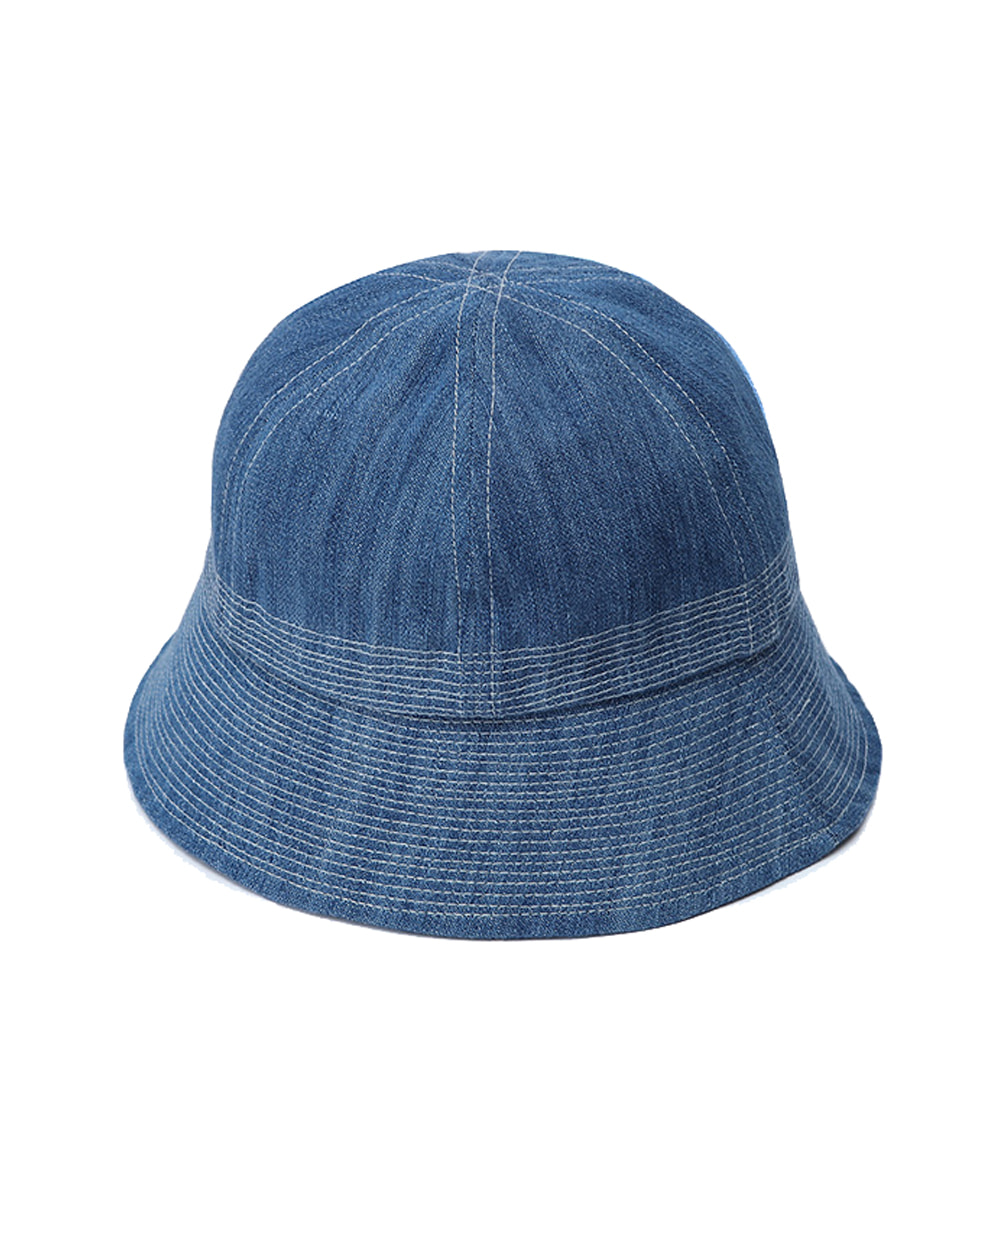 YMC Gilligan Hat (Indigo Bleach)